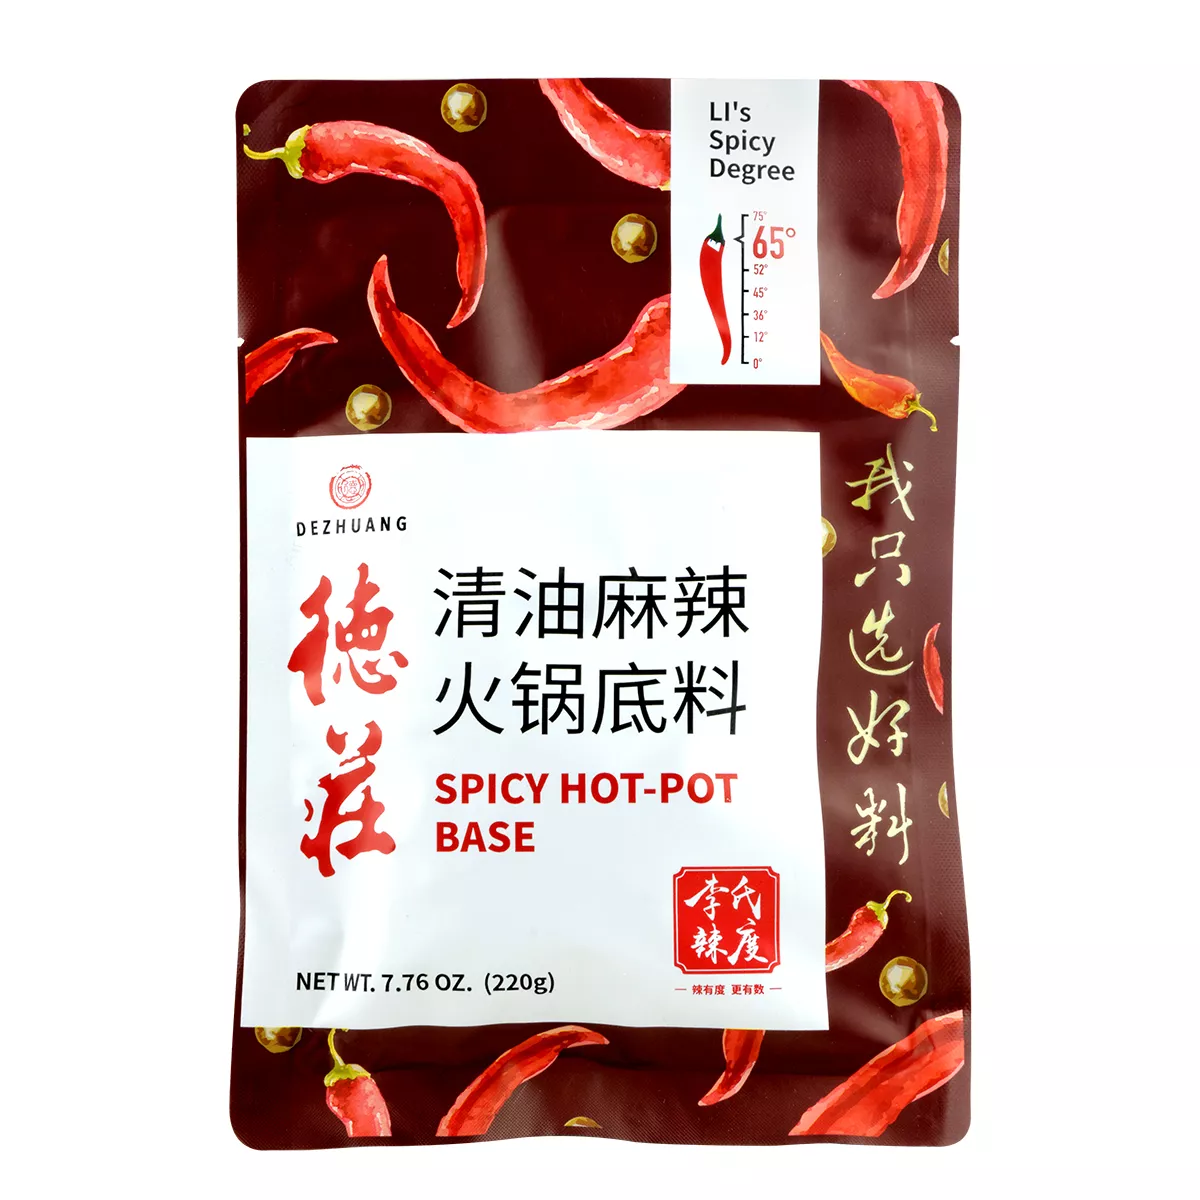 Baza supa Hot Pot Spicy DE ZHUANG 220g, [],asianfood.ro